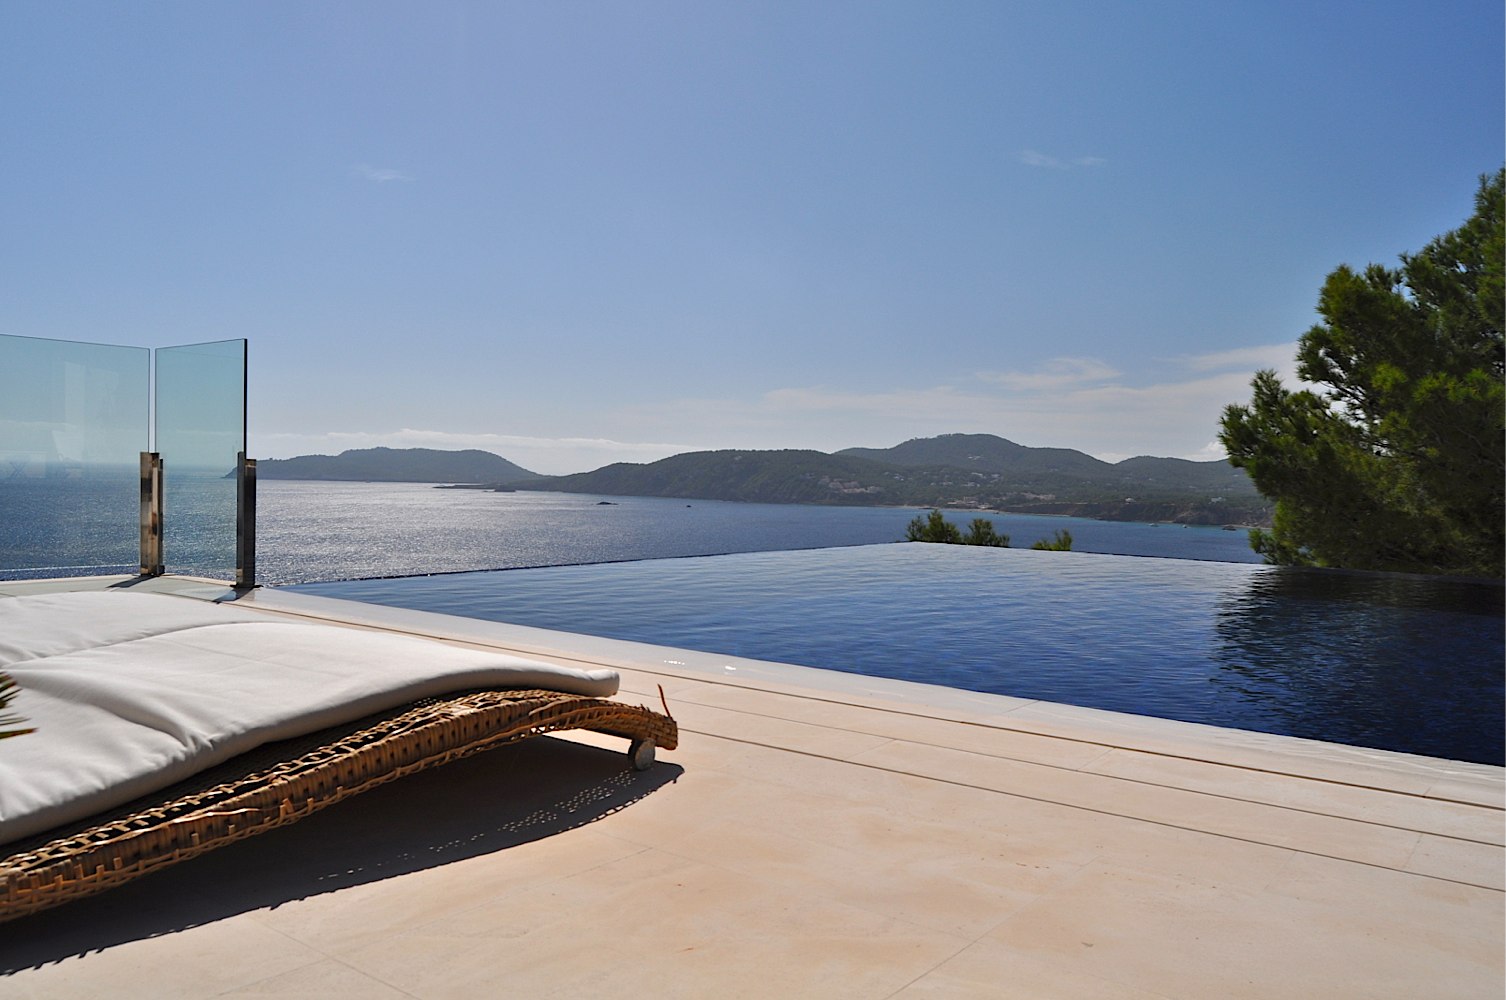 Unieke villa met een mogelijke licentie voor een hotel - Boutique in Ibiza